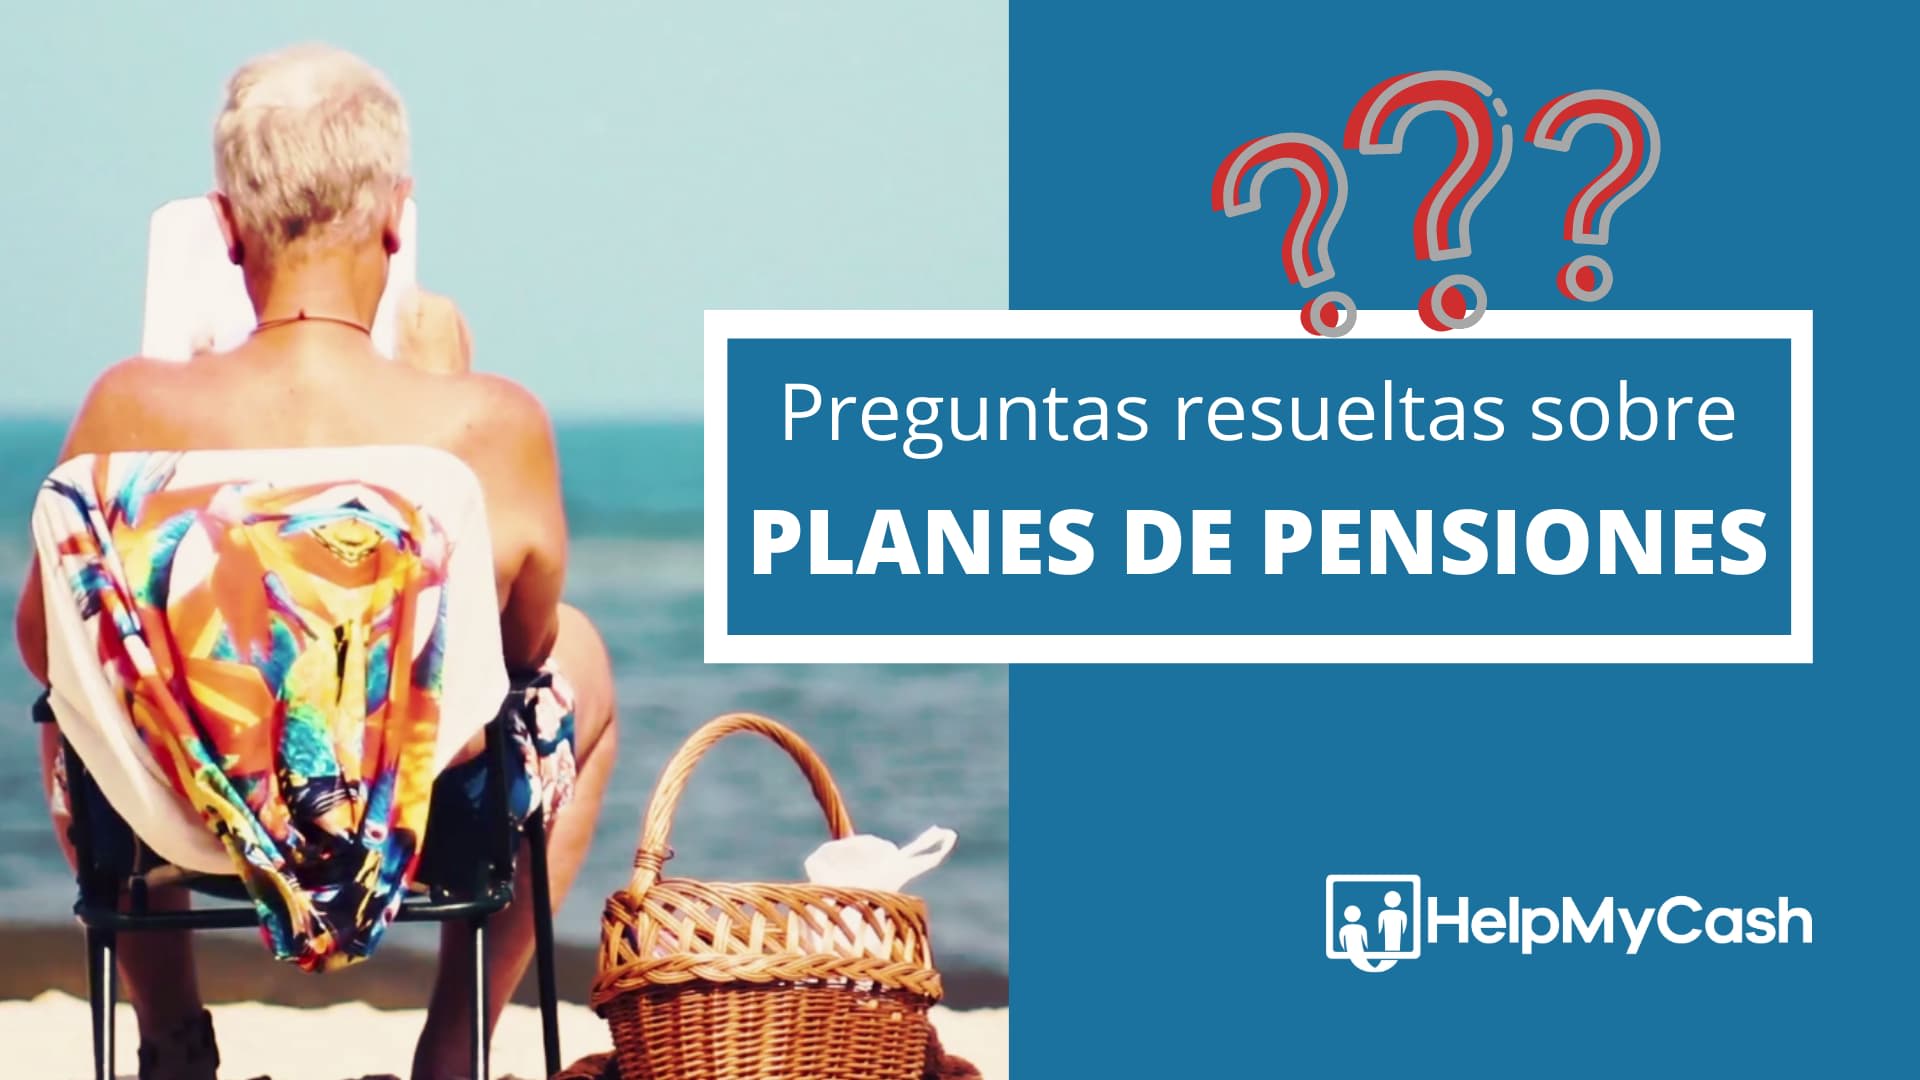 Planes de pensiones: ¿Cuáles son sus puntos clave?